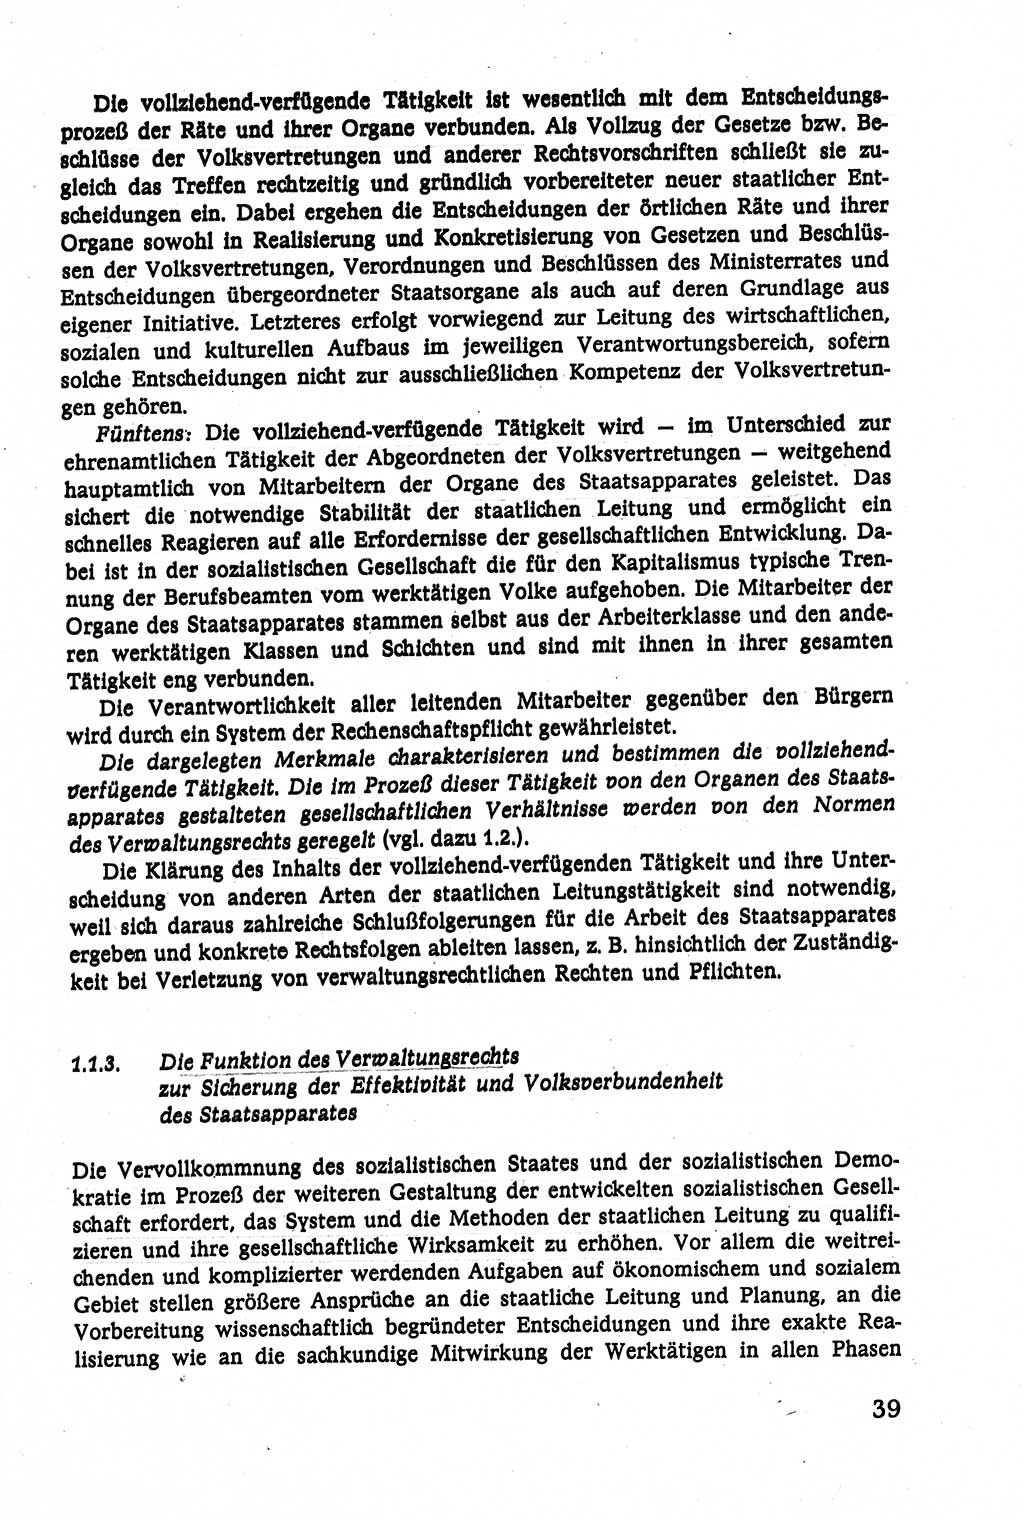 Verwaltungsrecht [Deutsche Demokratische Republik (DDR)], Lehrbuch 1979, Seite 39 (Verw.-R. DDR Lb. 1979, S. 39)